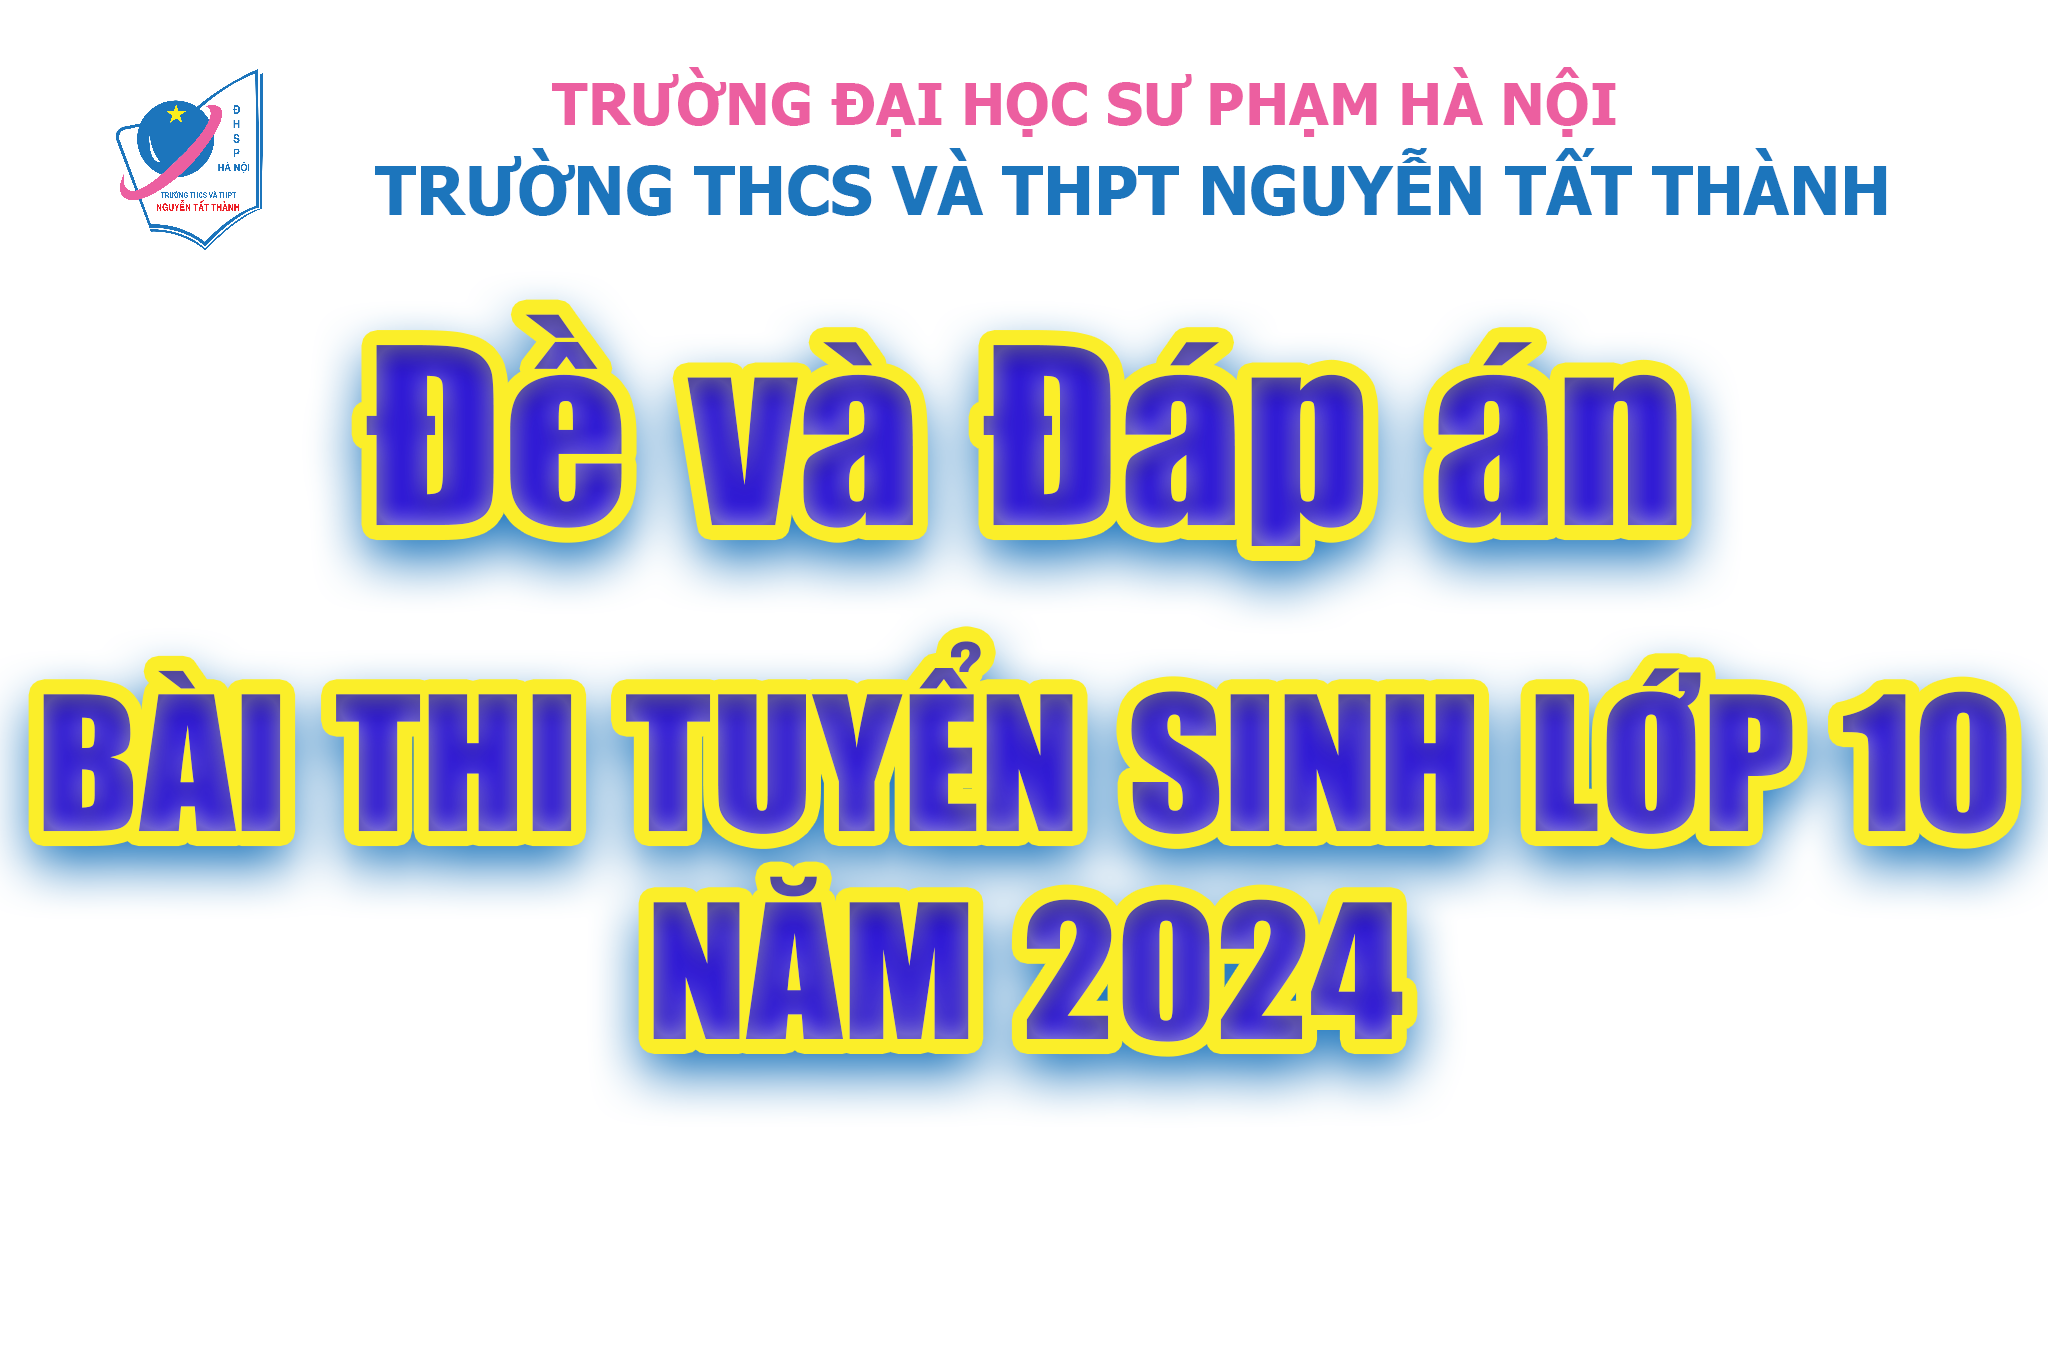 Đề và đáp án bài thi tuyển sinh lớp 10 Trường THCS&THPT Nguyễn Tất Thành năm 2024